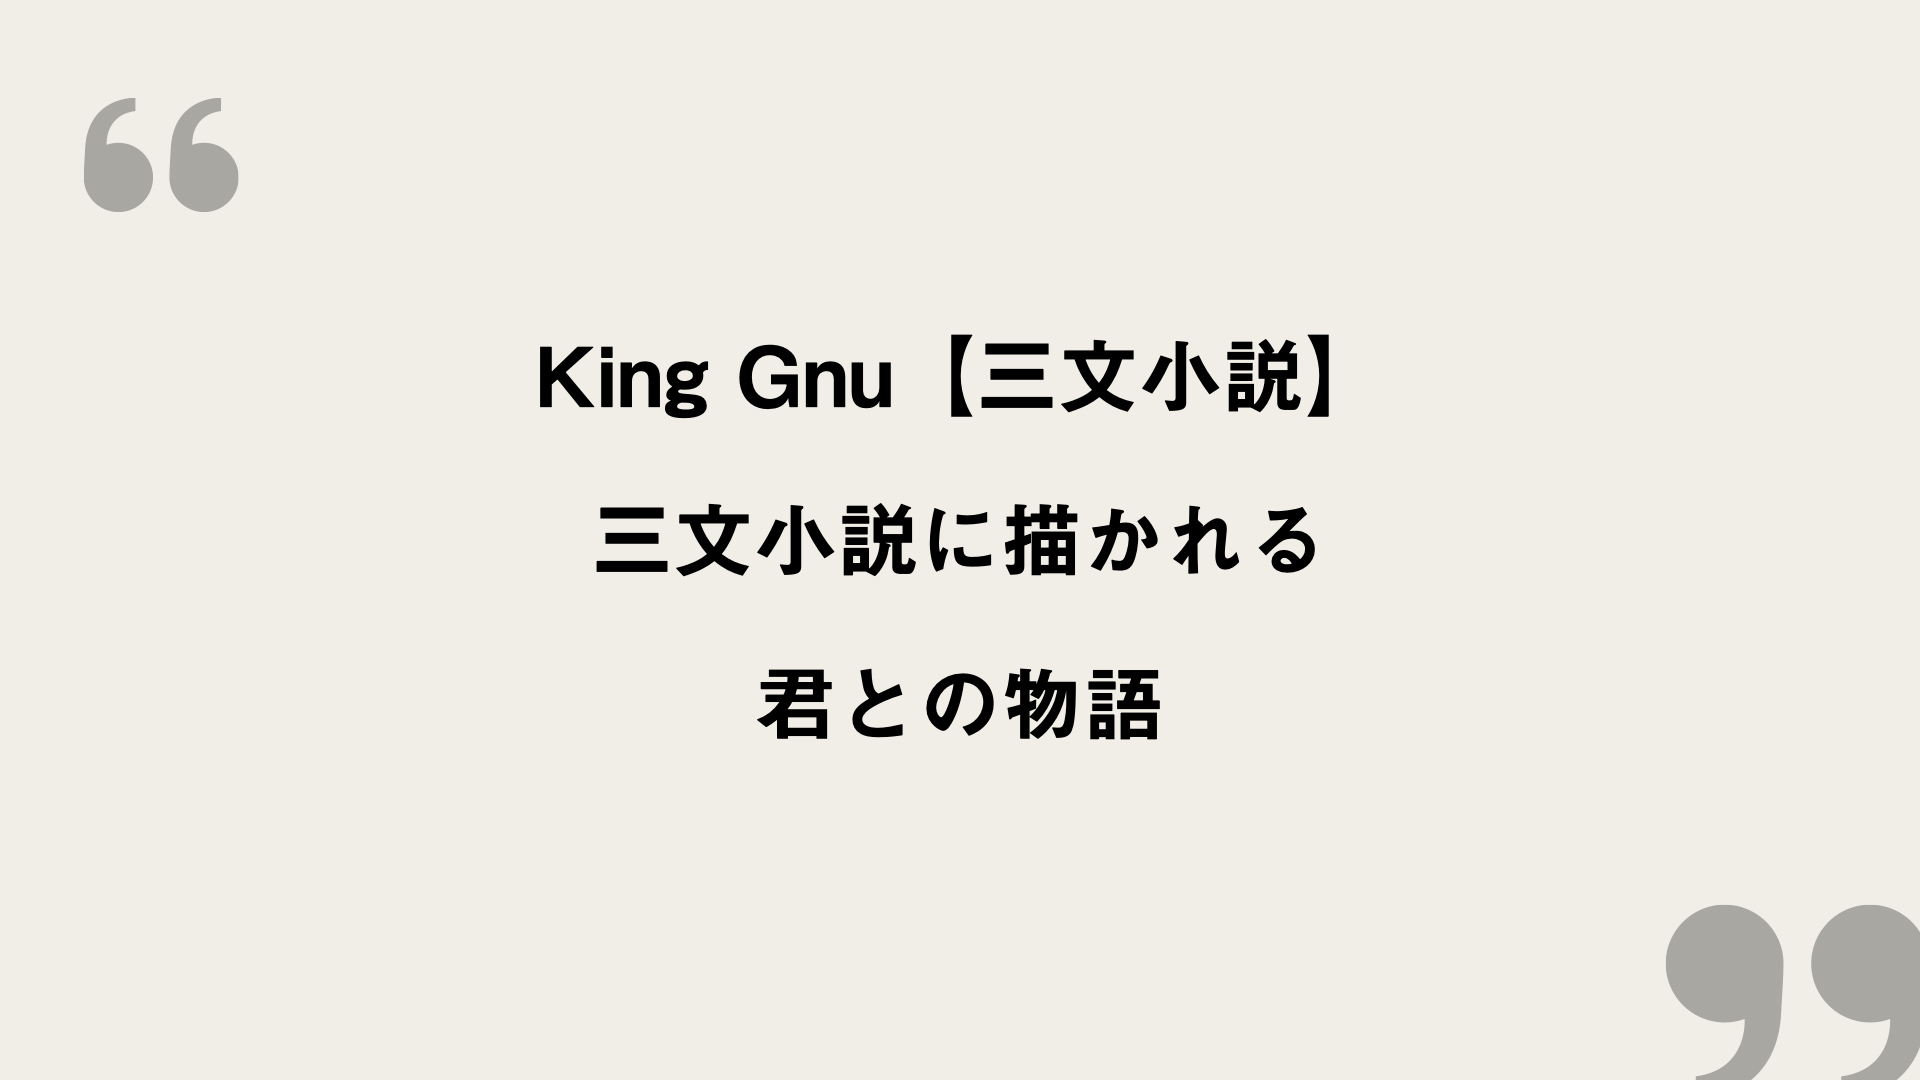 三文小説 King Gnu 歌詞の意味を考察 三文小説に描かれる君との物語 Framu Media